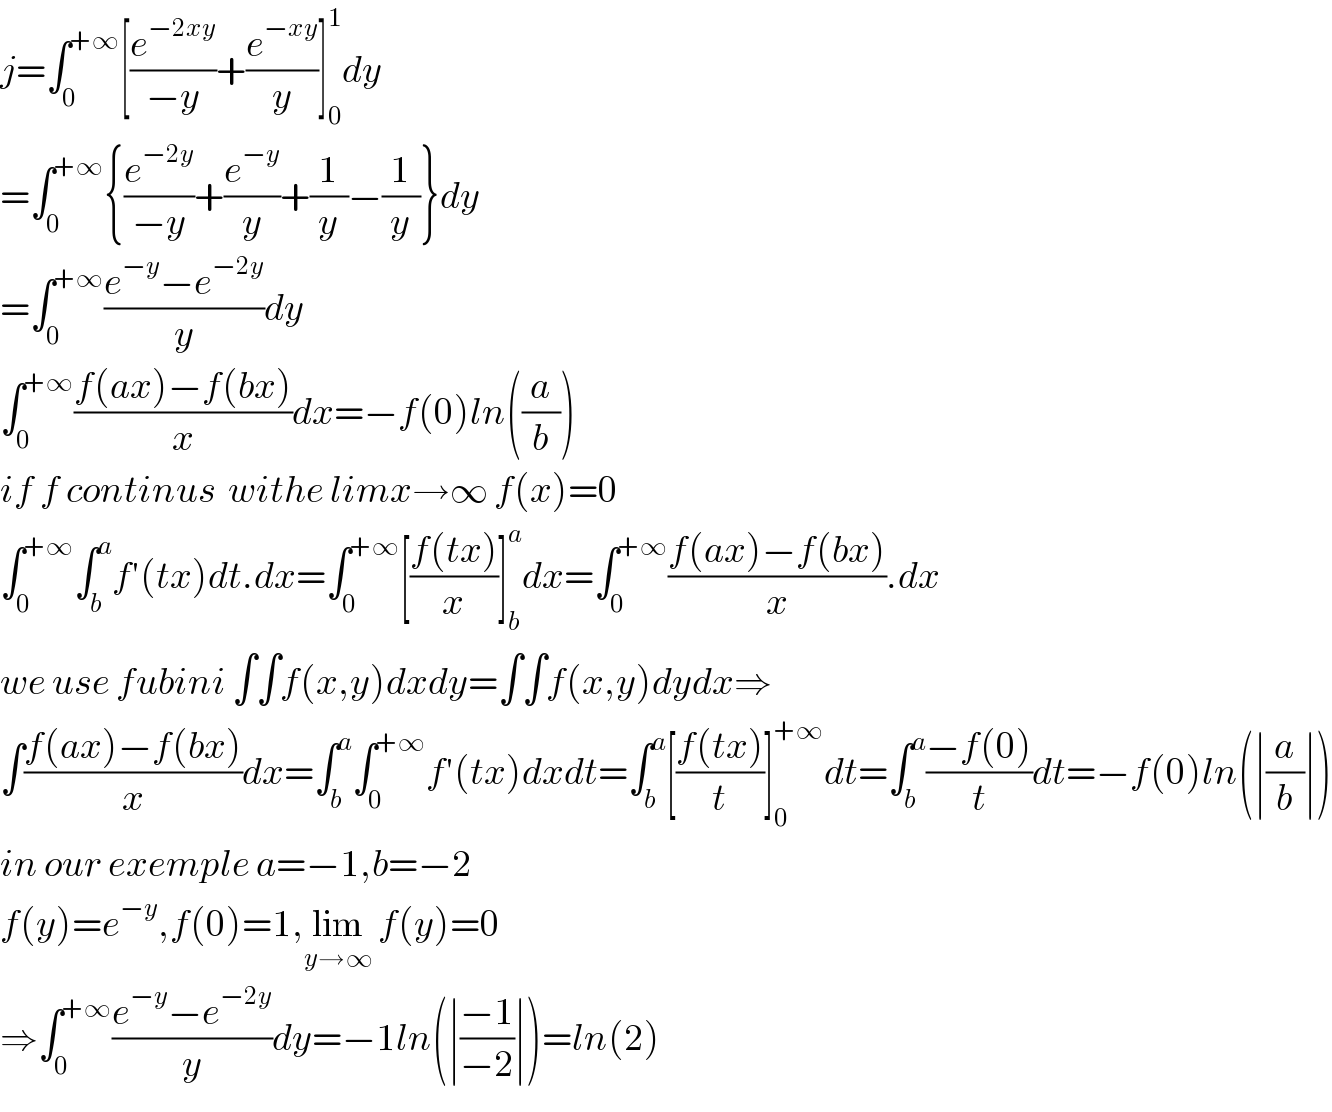 j=∫_0 ^(+∞) [(e^(−2xy) /(−y))+(e^(−xy) /y)]_0 ^1 dy  =∫_0 ^(+∞) {(e^(−2y) /(−y))+(e^(−y) /y)+(1/y)−(1/y)}dy  =∫_0 ^(+∞) ((e^(−y) −e^(−2y) )/y)dy  ∫_0 ^(+∞) ((f(ax)−f(bx))/x)dx=−f(0)ln((a/b))  if f continus  withe limx→∞ f(x)=0  ∫_0 ^(+∞) ∫_b ^a f′(tx)dt.dx=∫_0 ^(+∞) [((f(tx))/x)]_b ^a dx=∫_0 ^(+∞) ((f(ax)−f(bx))/x).dx  we use fubini ∫∫f(x,y)dxdy=∫∫f(x,y)dydx⇒  ∫((f(ax)−f(bx))/x)dx=∫_b ^a ∫_0 ^(+∞) f′(tx)dxdt=∫_b ^a [((f(tx))/t)]_0 ^(+∞) dt=∫_b ^a ((−f(0))/t)dt=−f(0)ln(∣(a/b)∣)  in our exemple a=−1,b=−2  f(y)=e^(−y) ,f(0)=1,lim_(y→∞)  f(y)=0     ⇒∫_0 ^(+∞) ((e^(−y) −e^(−2y) )/y)dy=−1ln(∣((−1)/(−2))∣)=ln(2)  